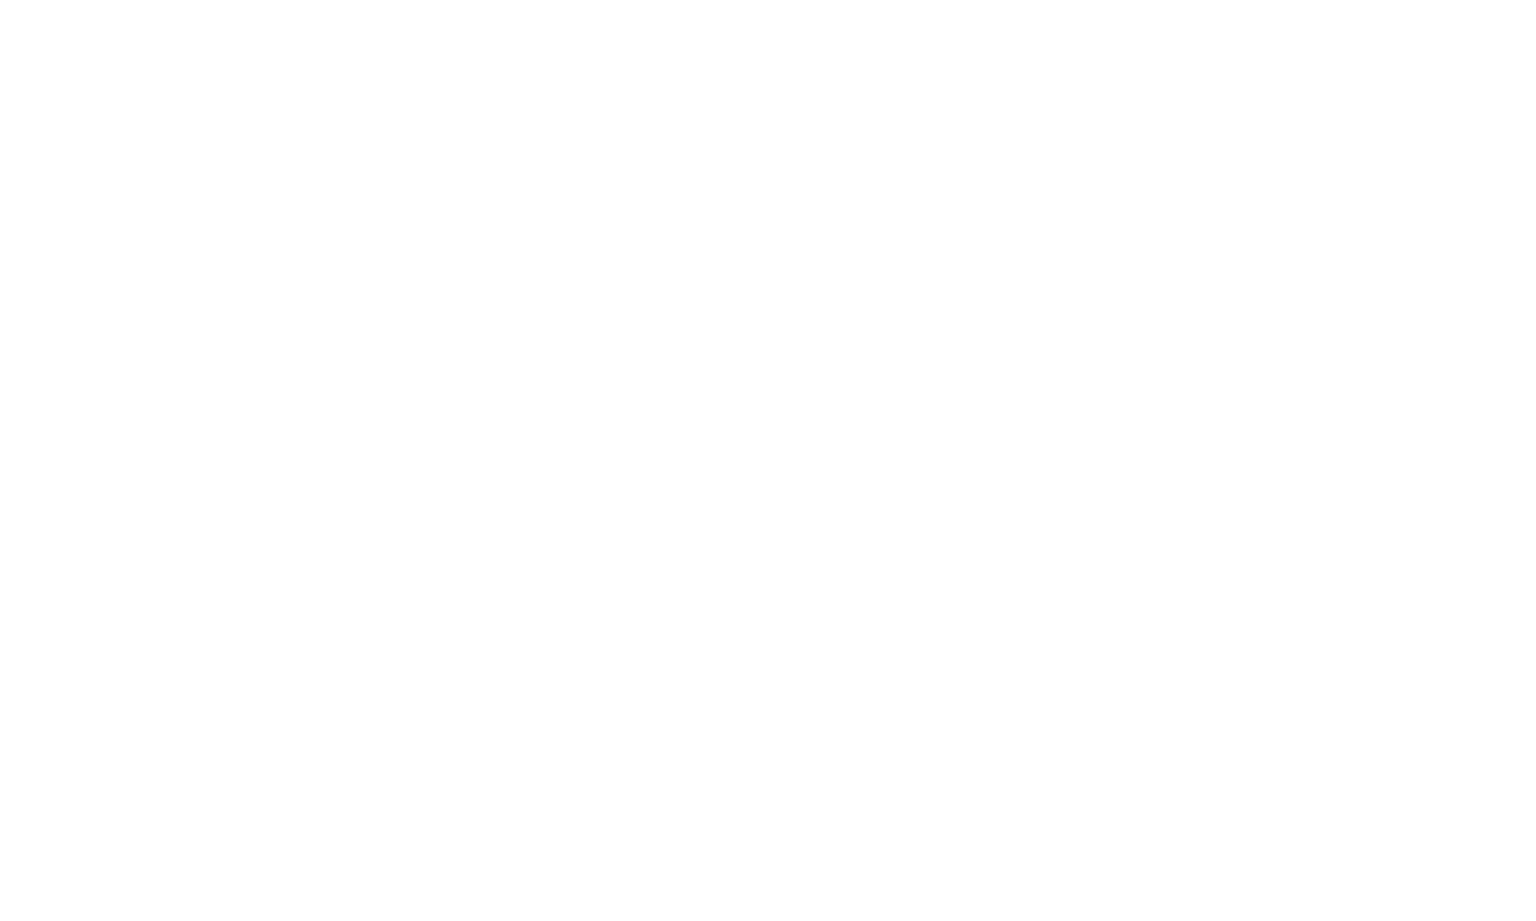 Fort Bend Epicenter